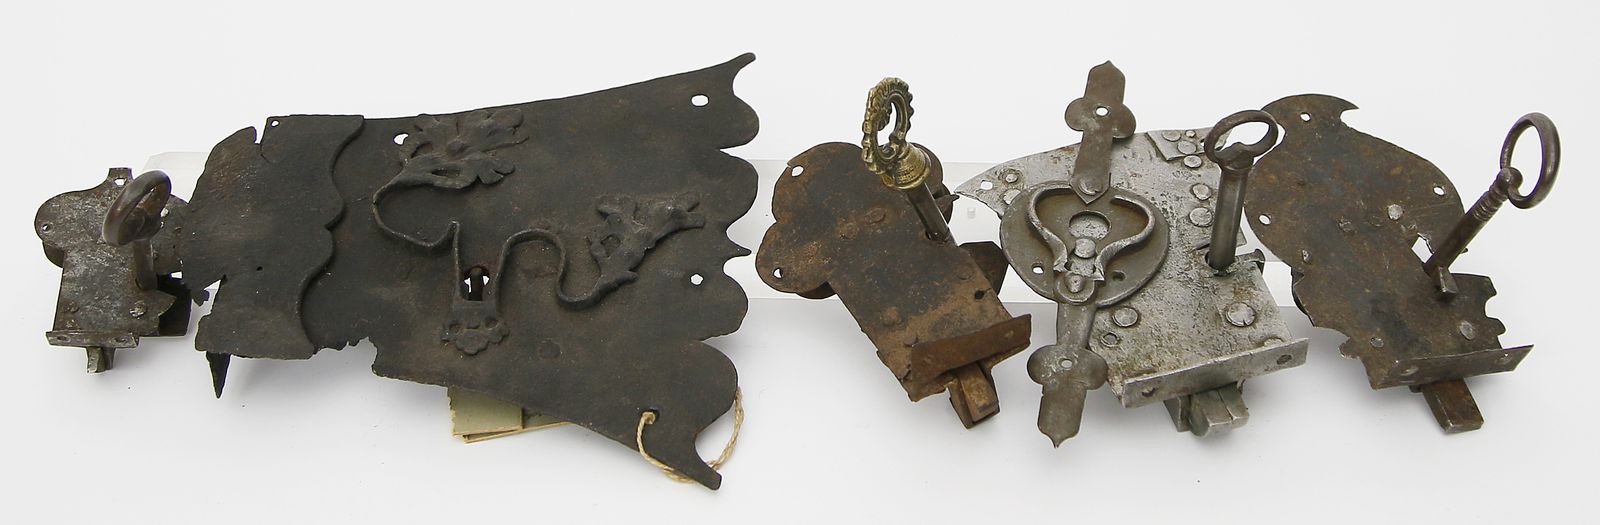 Sechs kleine, barocke Schrank- oder Truhenschlösser, 5x mit Schlüsseln.